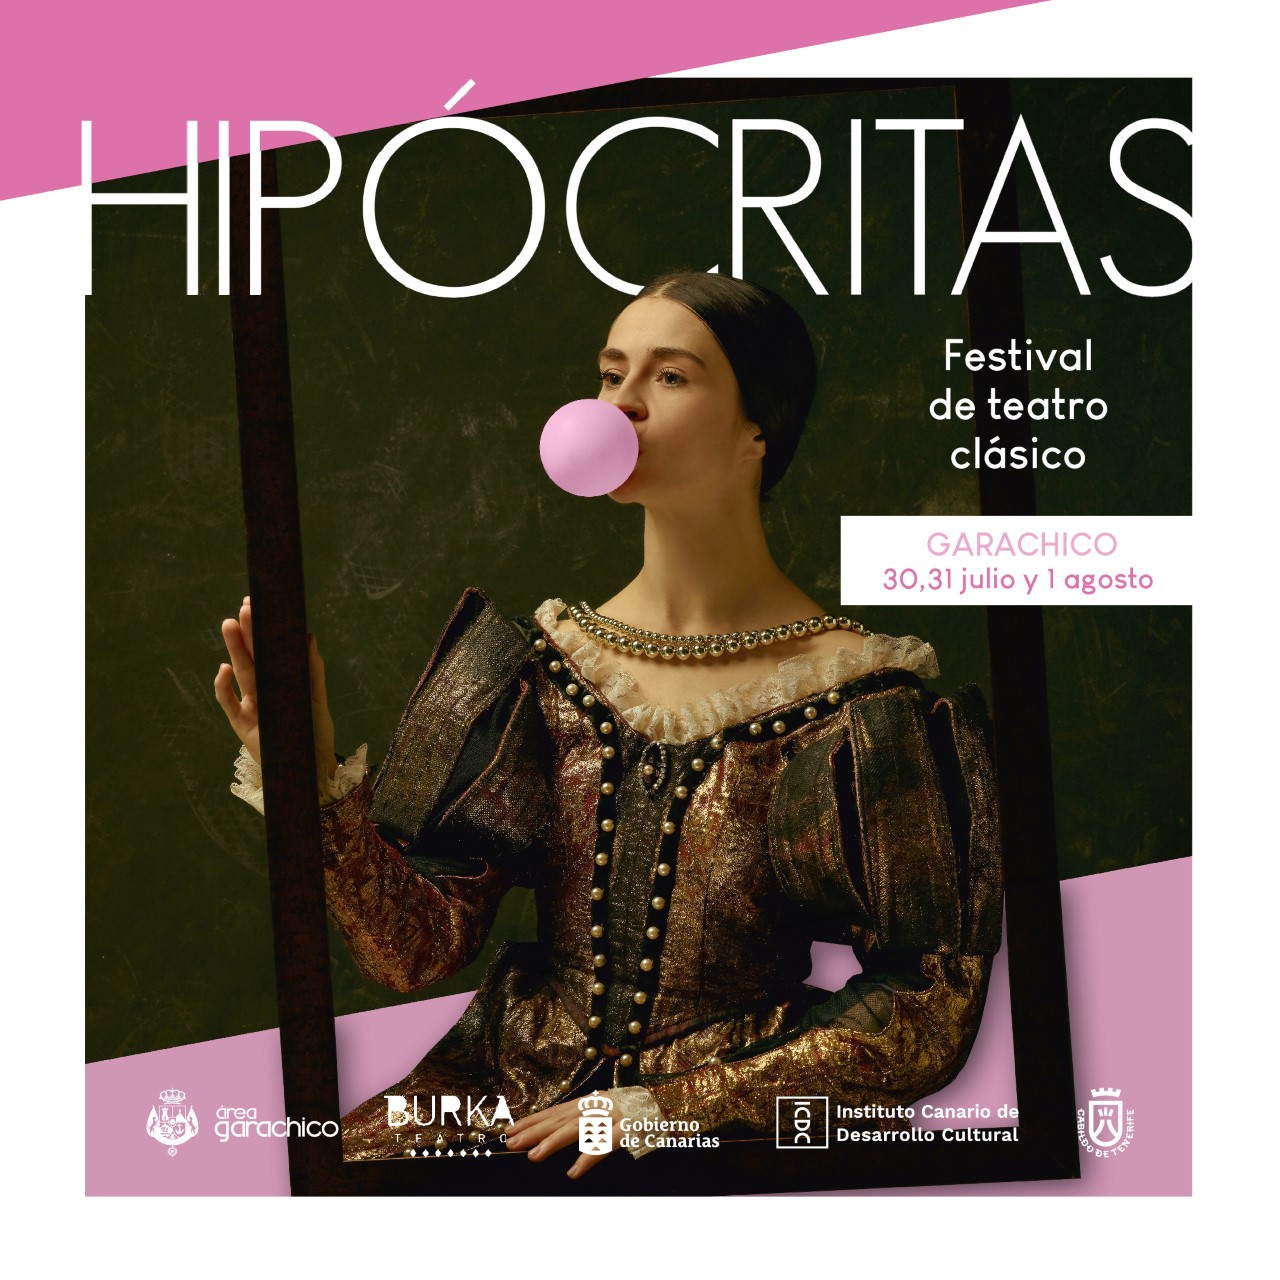 Hipócritas trae el mejor teatro clásico a Garachico/ canariasnoticias